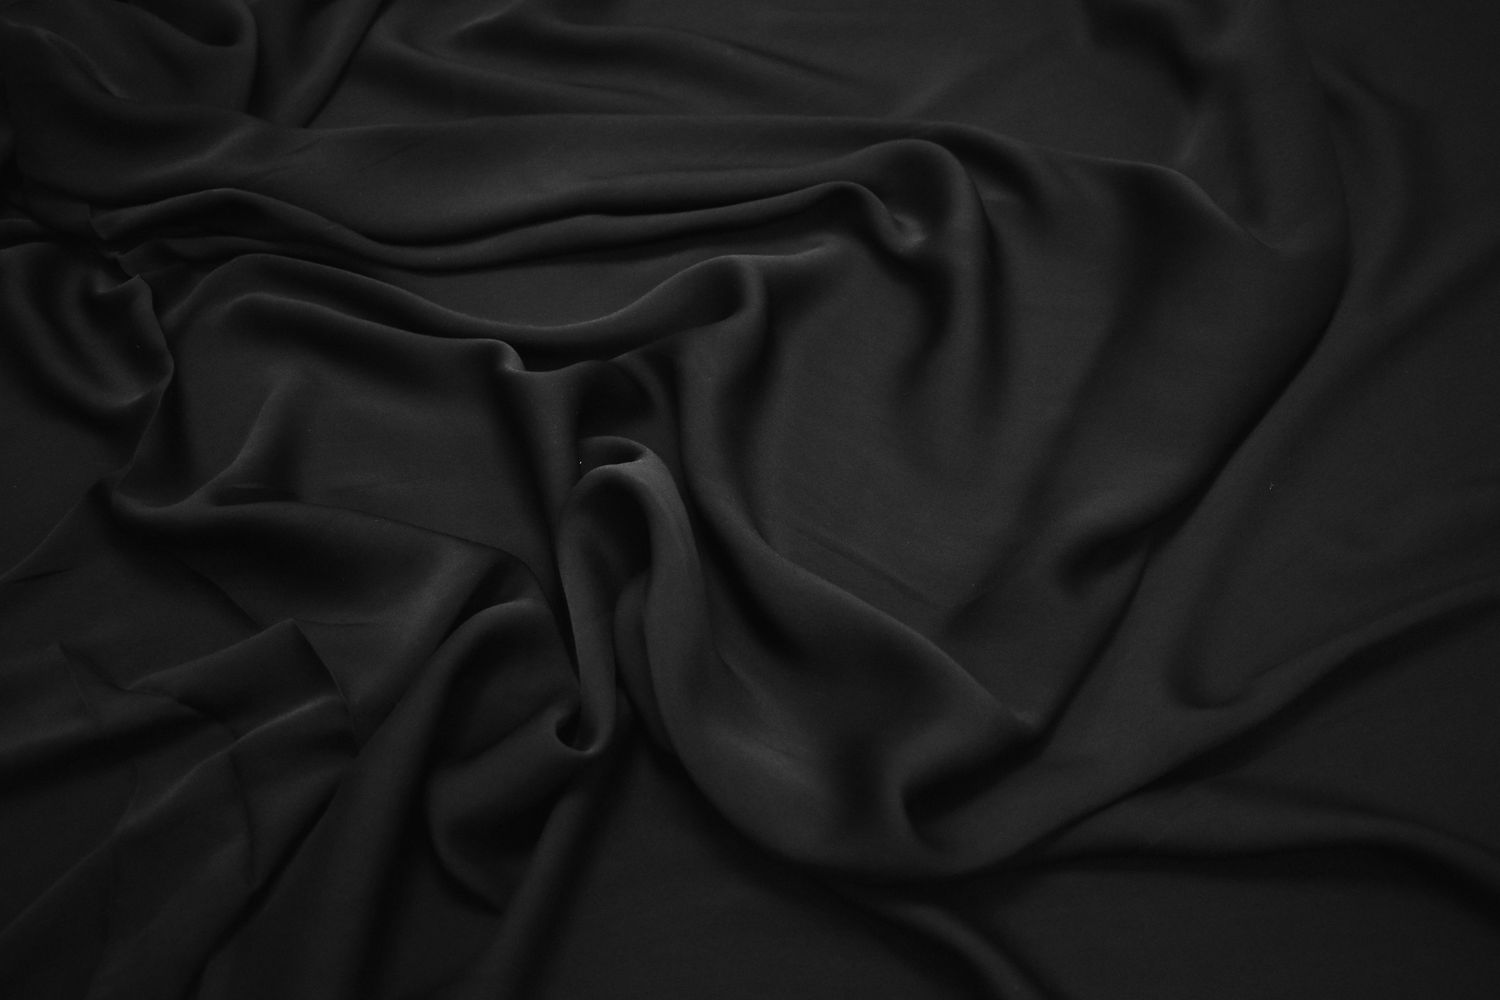 Плательная черная ткань W-127185